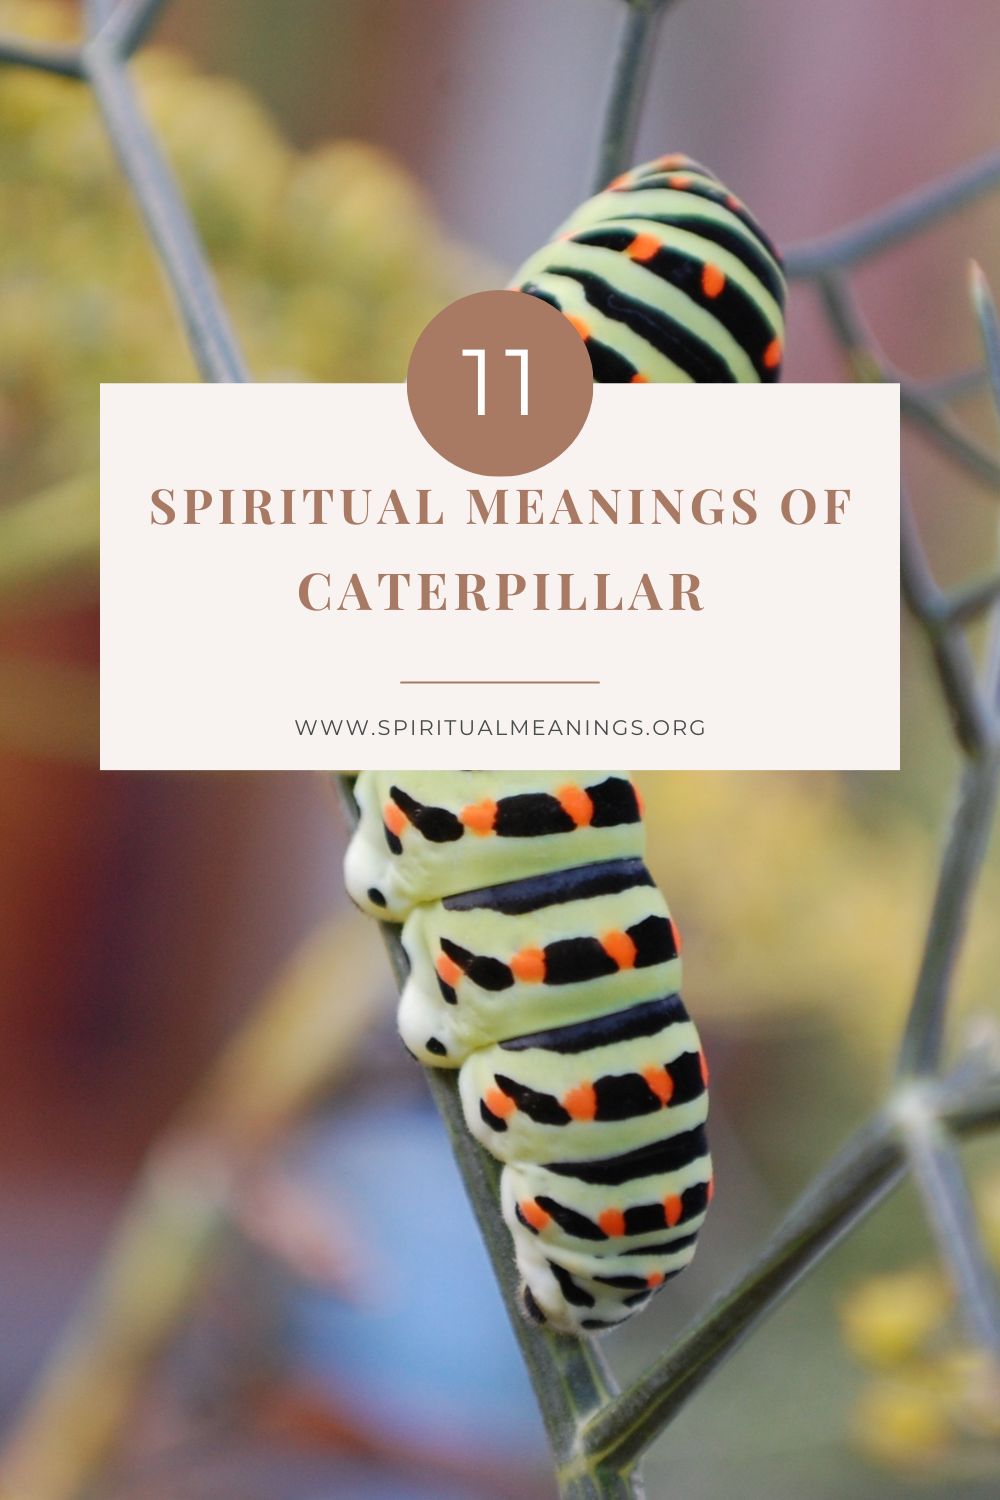 caterpillars make great spirit guides